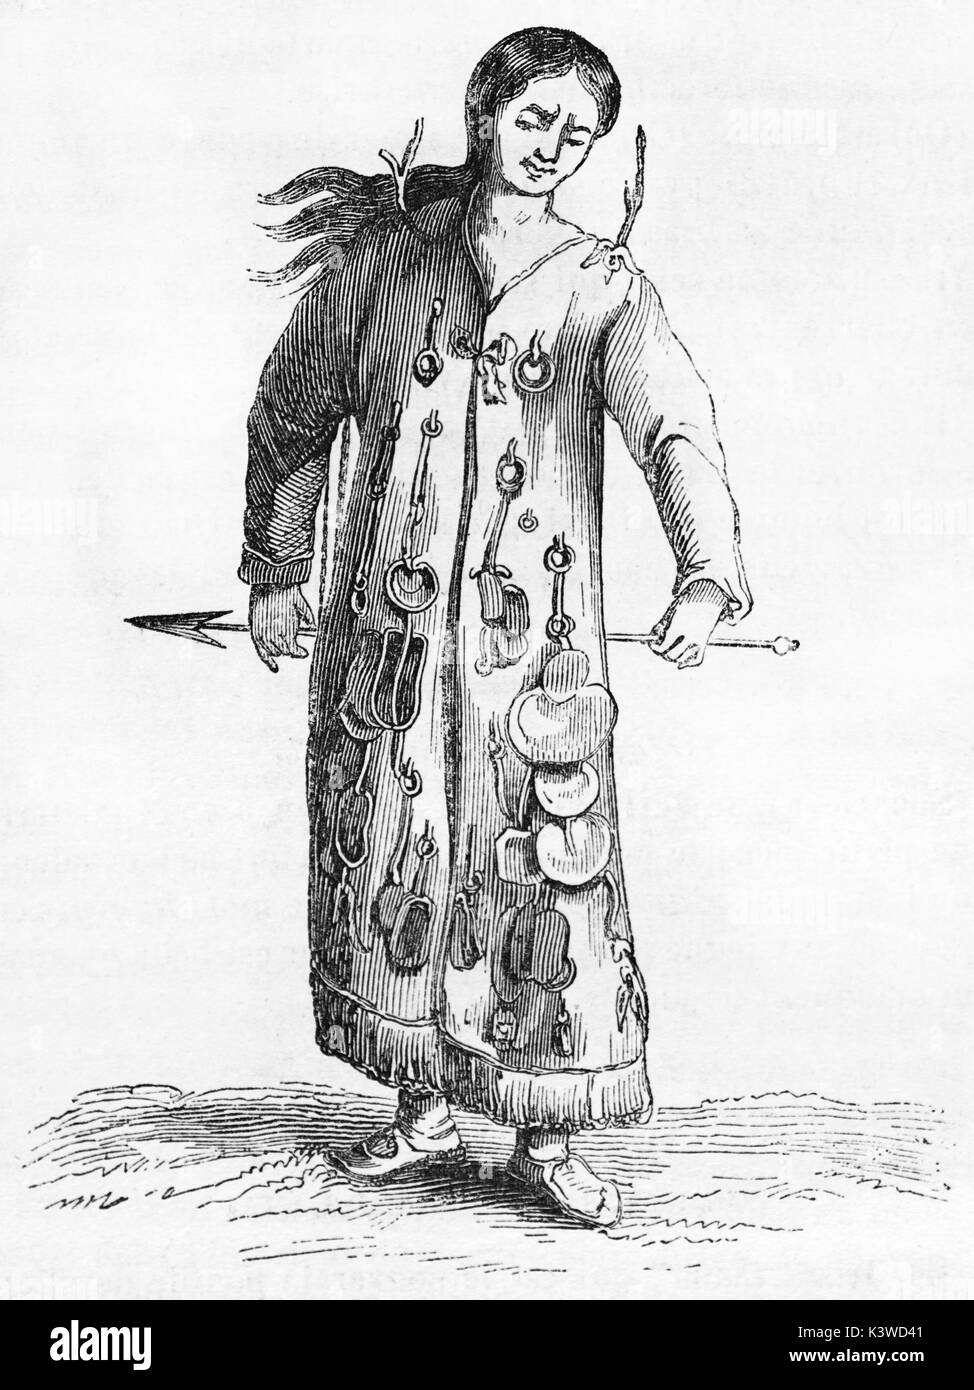 Vecchia illustrazione di uno sciamano. Da autore non identificato, pubblicato il Magasin pittoresco, Parigi, 1841 Foto Stock